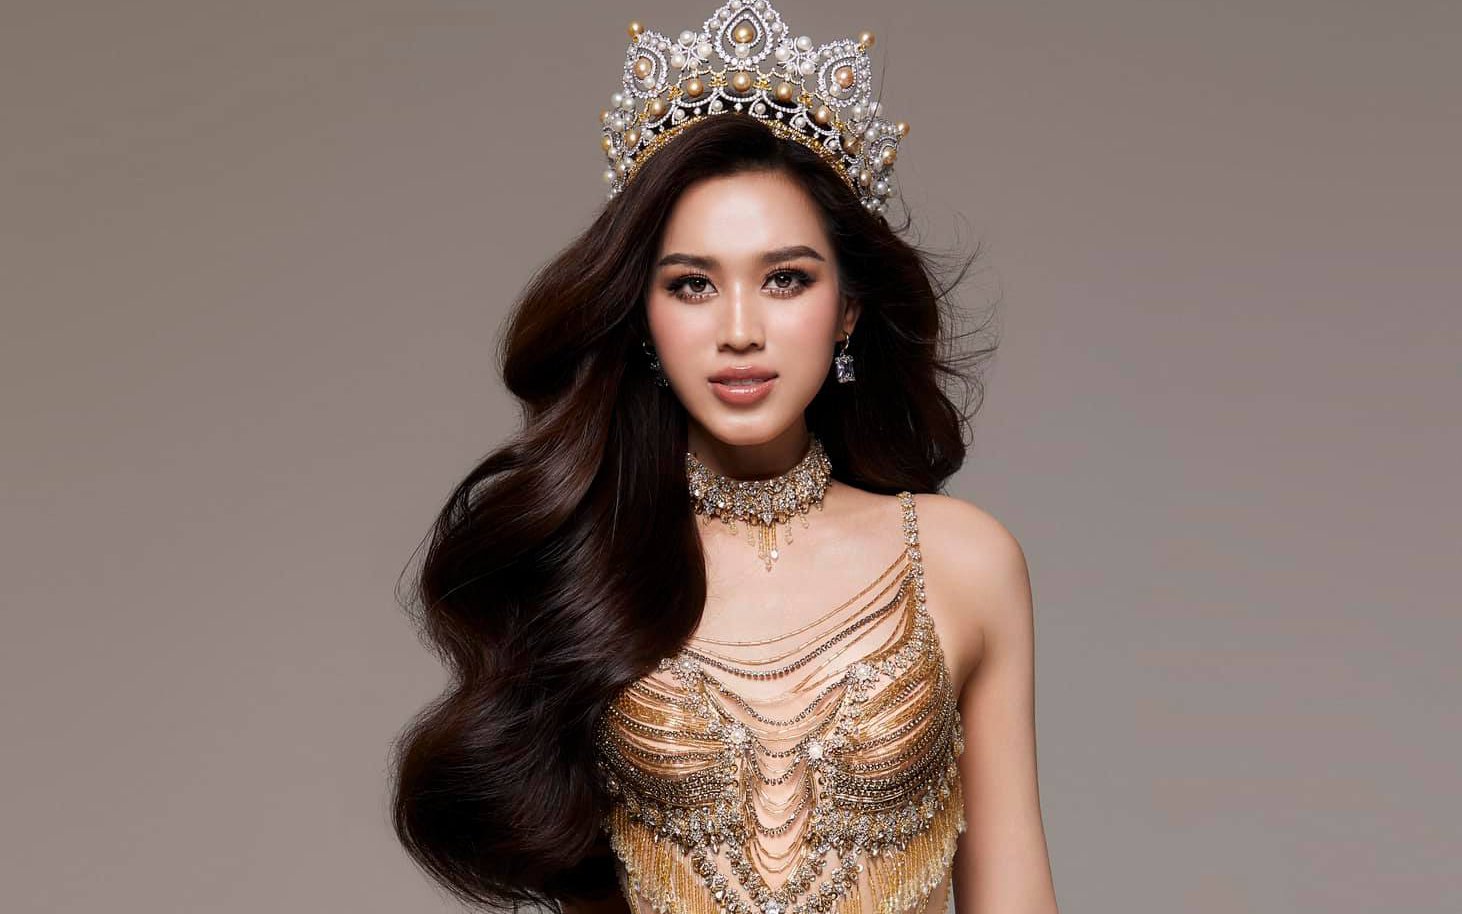 Đỗ Thị Hà: “Tân Hoa hậu Việt Nam 2022 phải là người bản lĩnh, chỉn chu…”